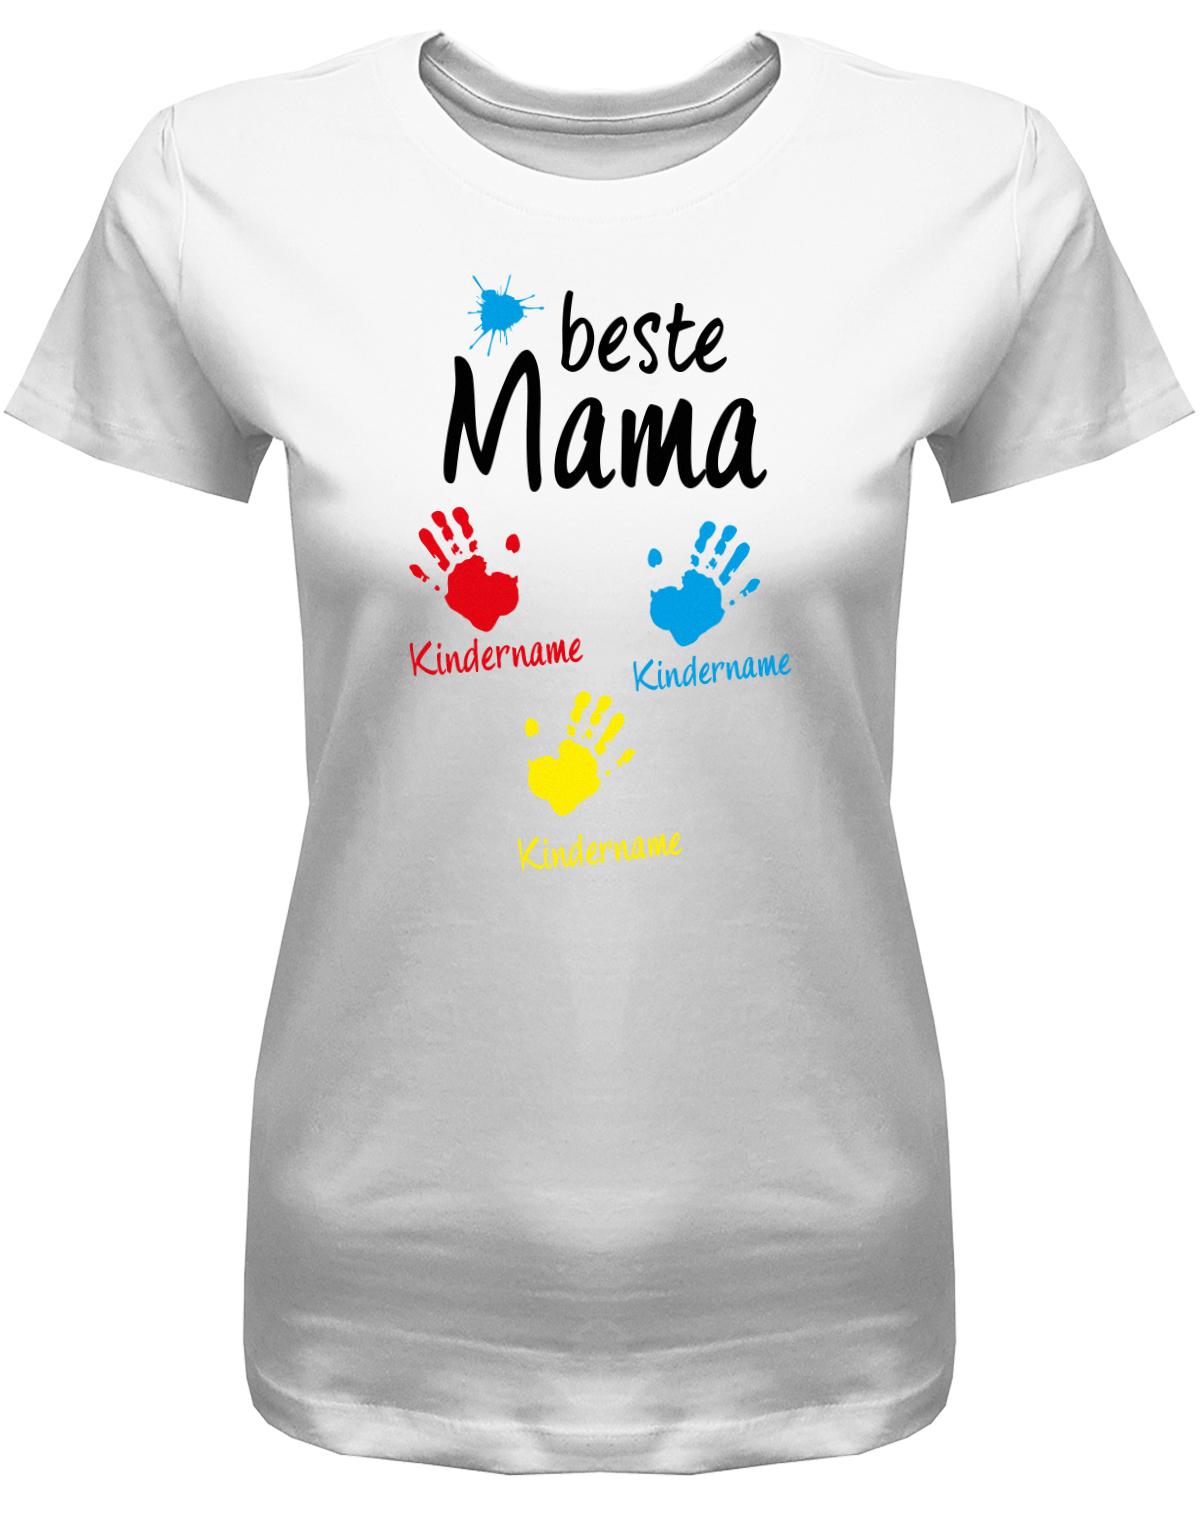 Beste-Mama-3-Kinder-Wusnchnamen-Damen-Shirt-weiss